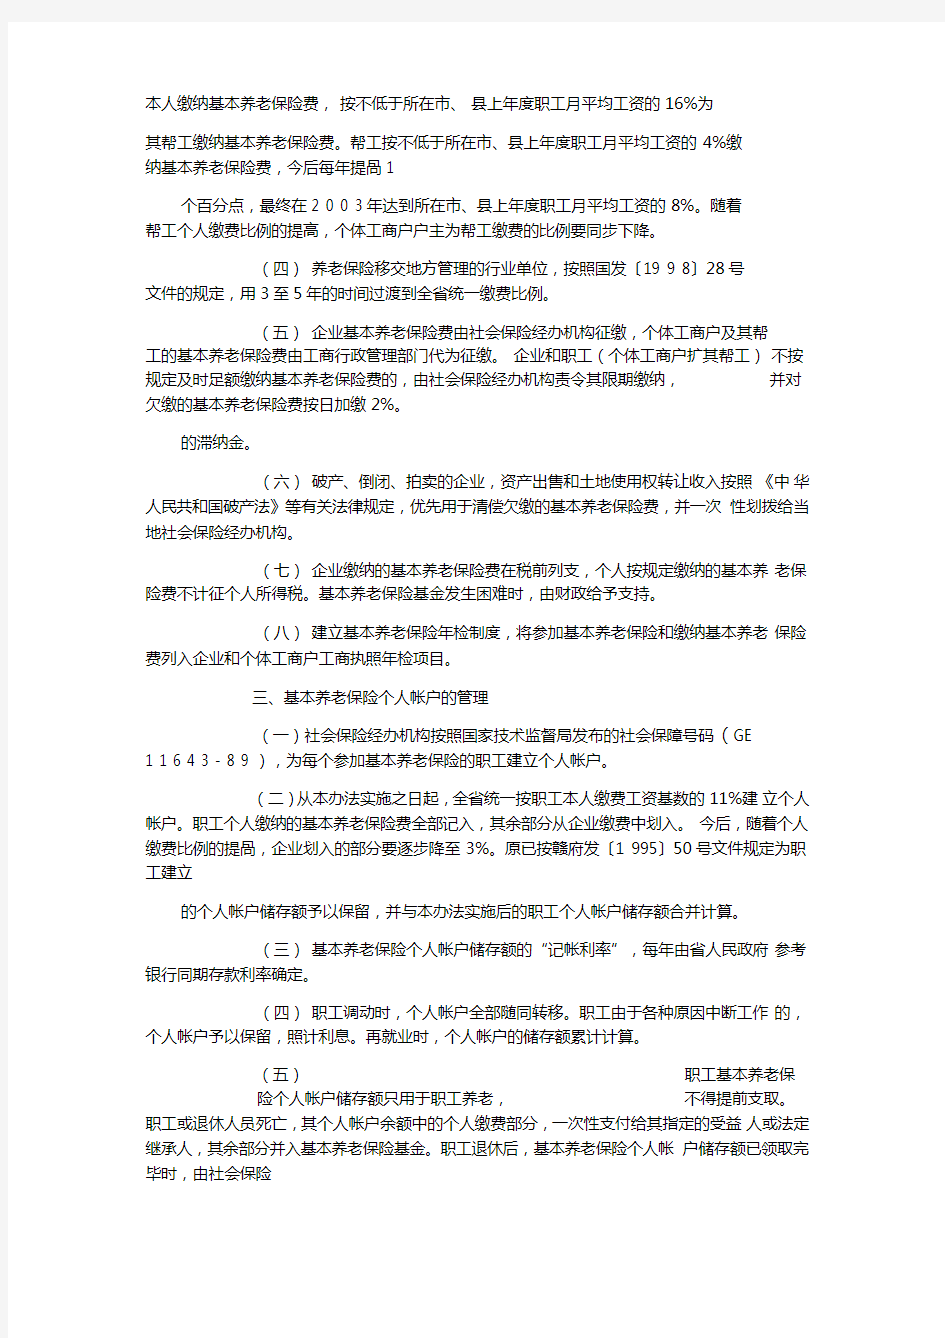 江西省城镇企业职工养老保险制度改革实施方案细则(赣劳社[1999]14号)